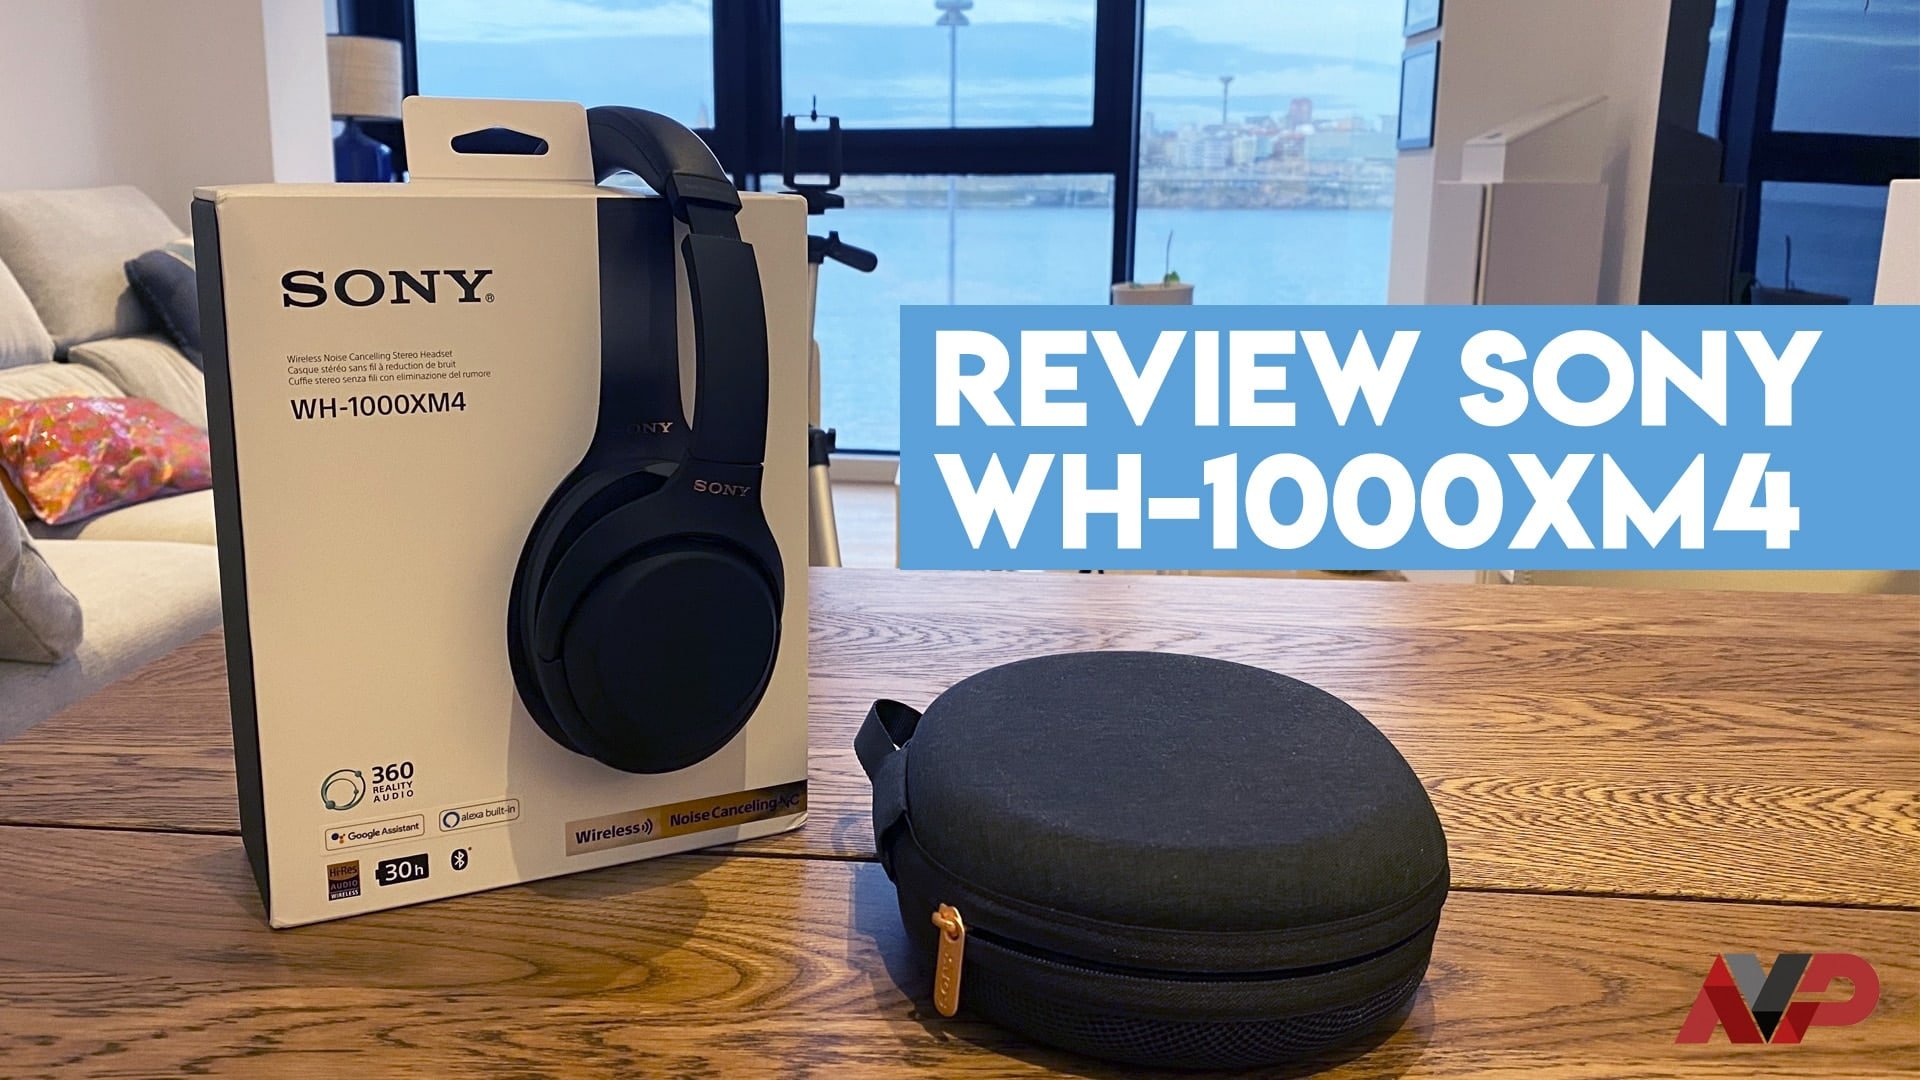 Review Sony WH-1000XM4: análisis del diseño, características, precio y  opinión